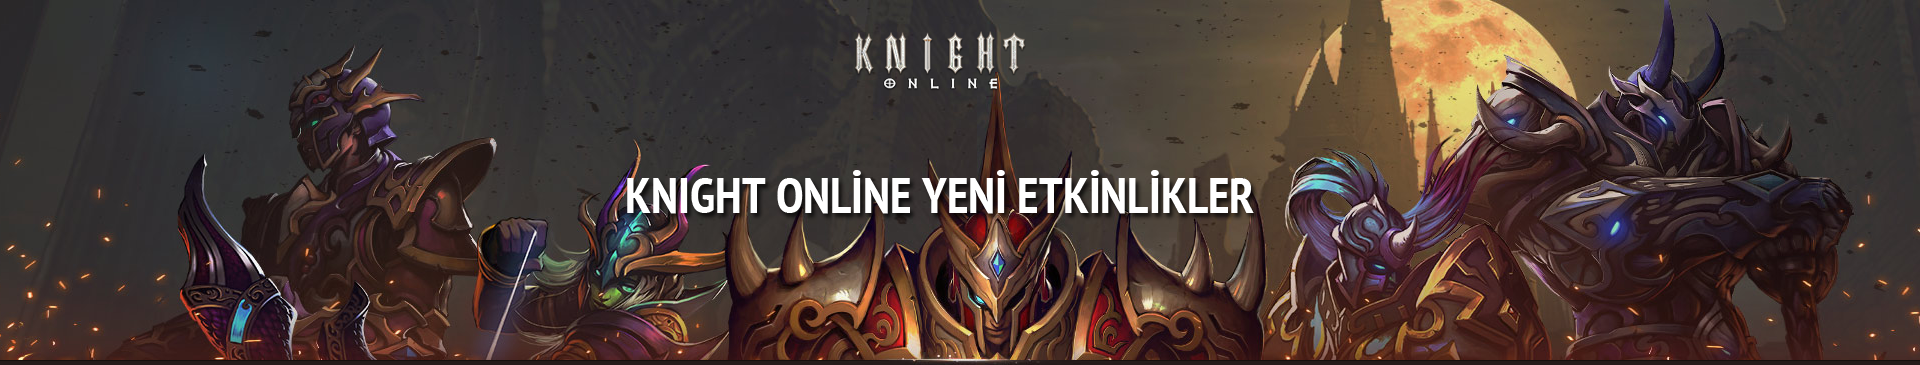 Knight online yeni etkinlikler başladı